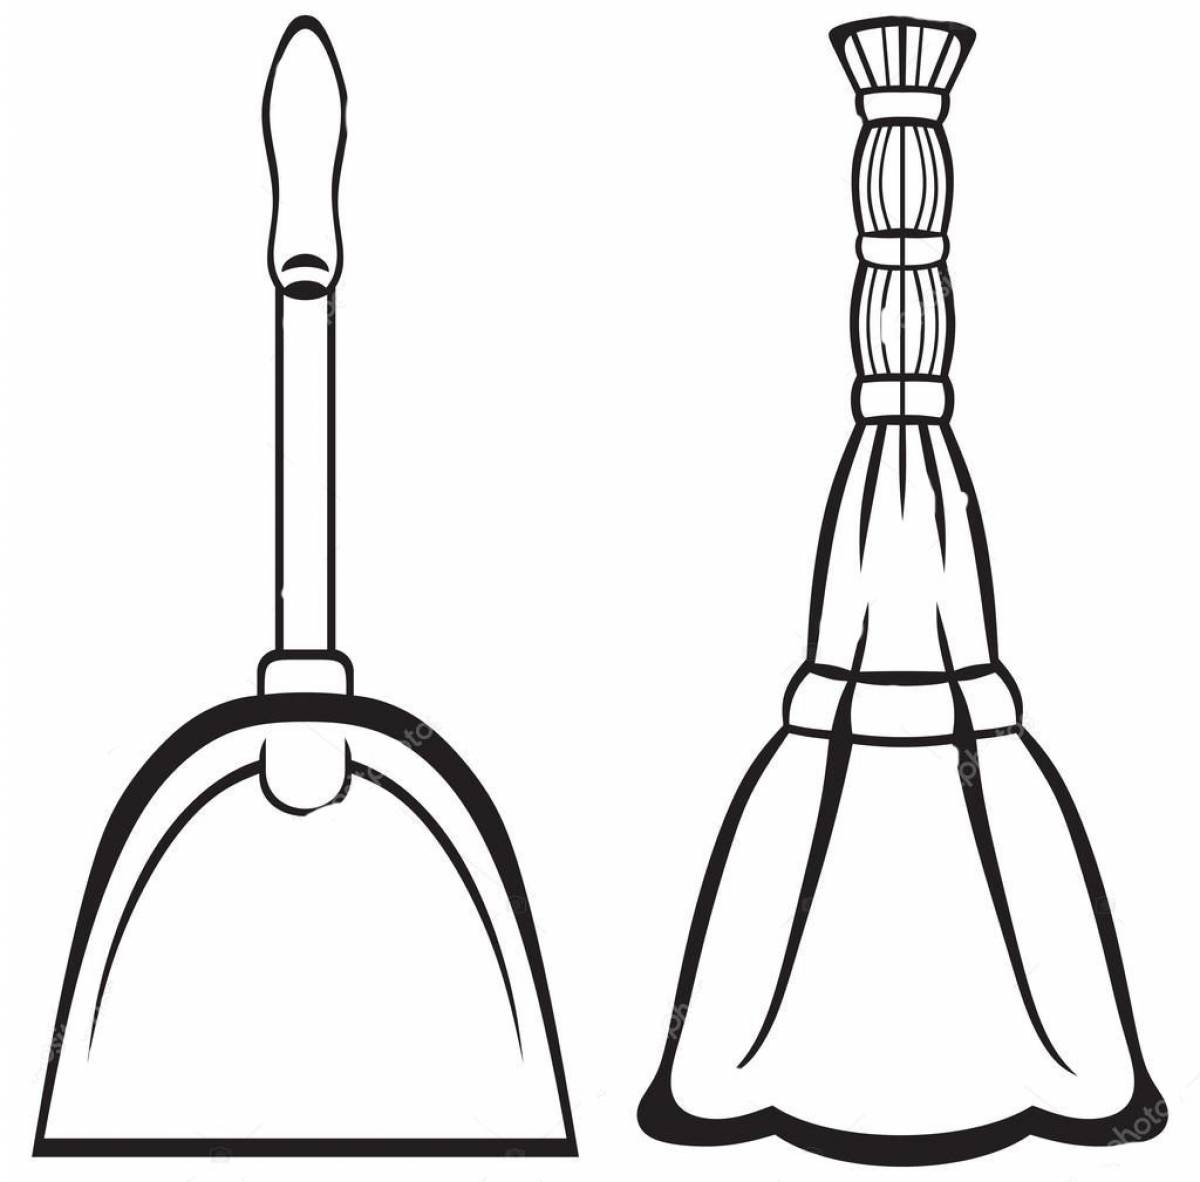 Broom and shovel